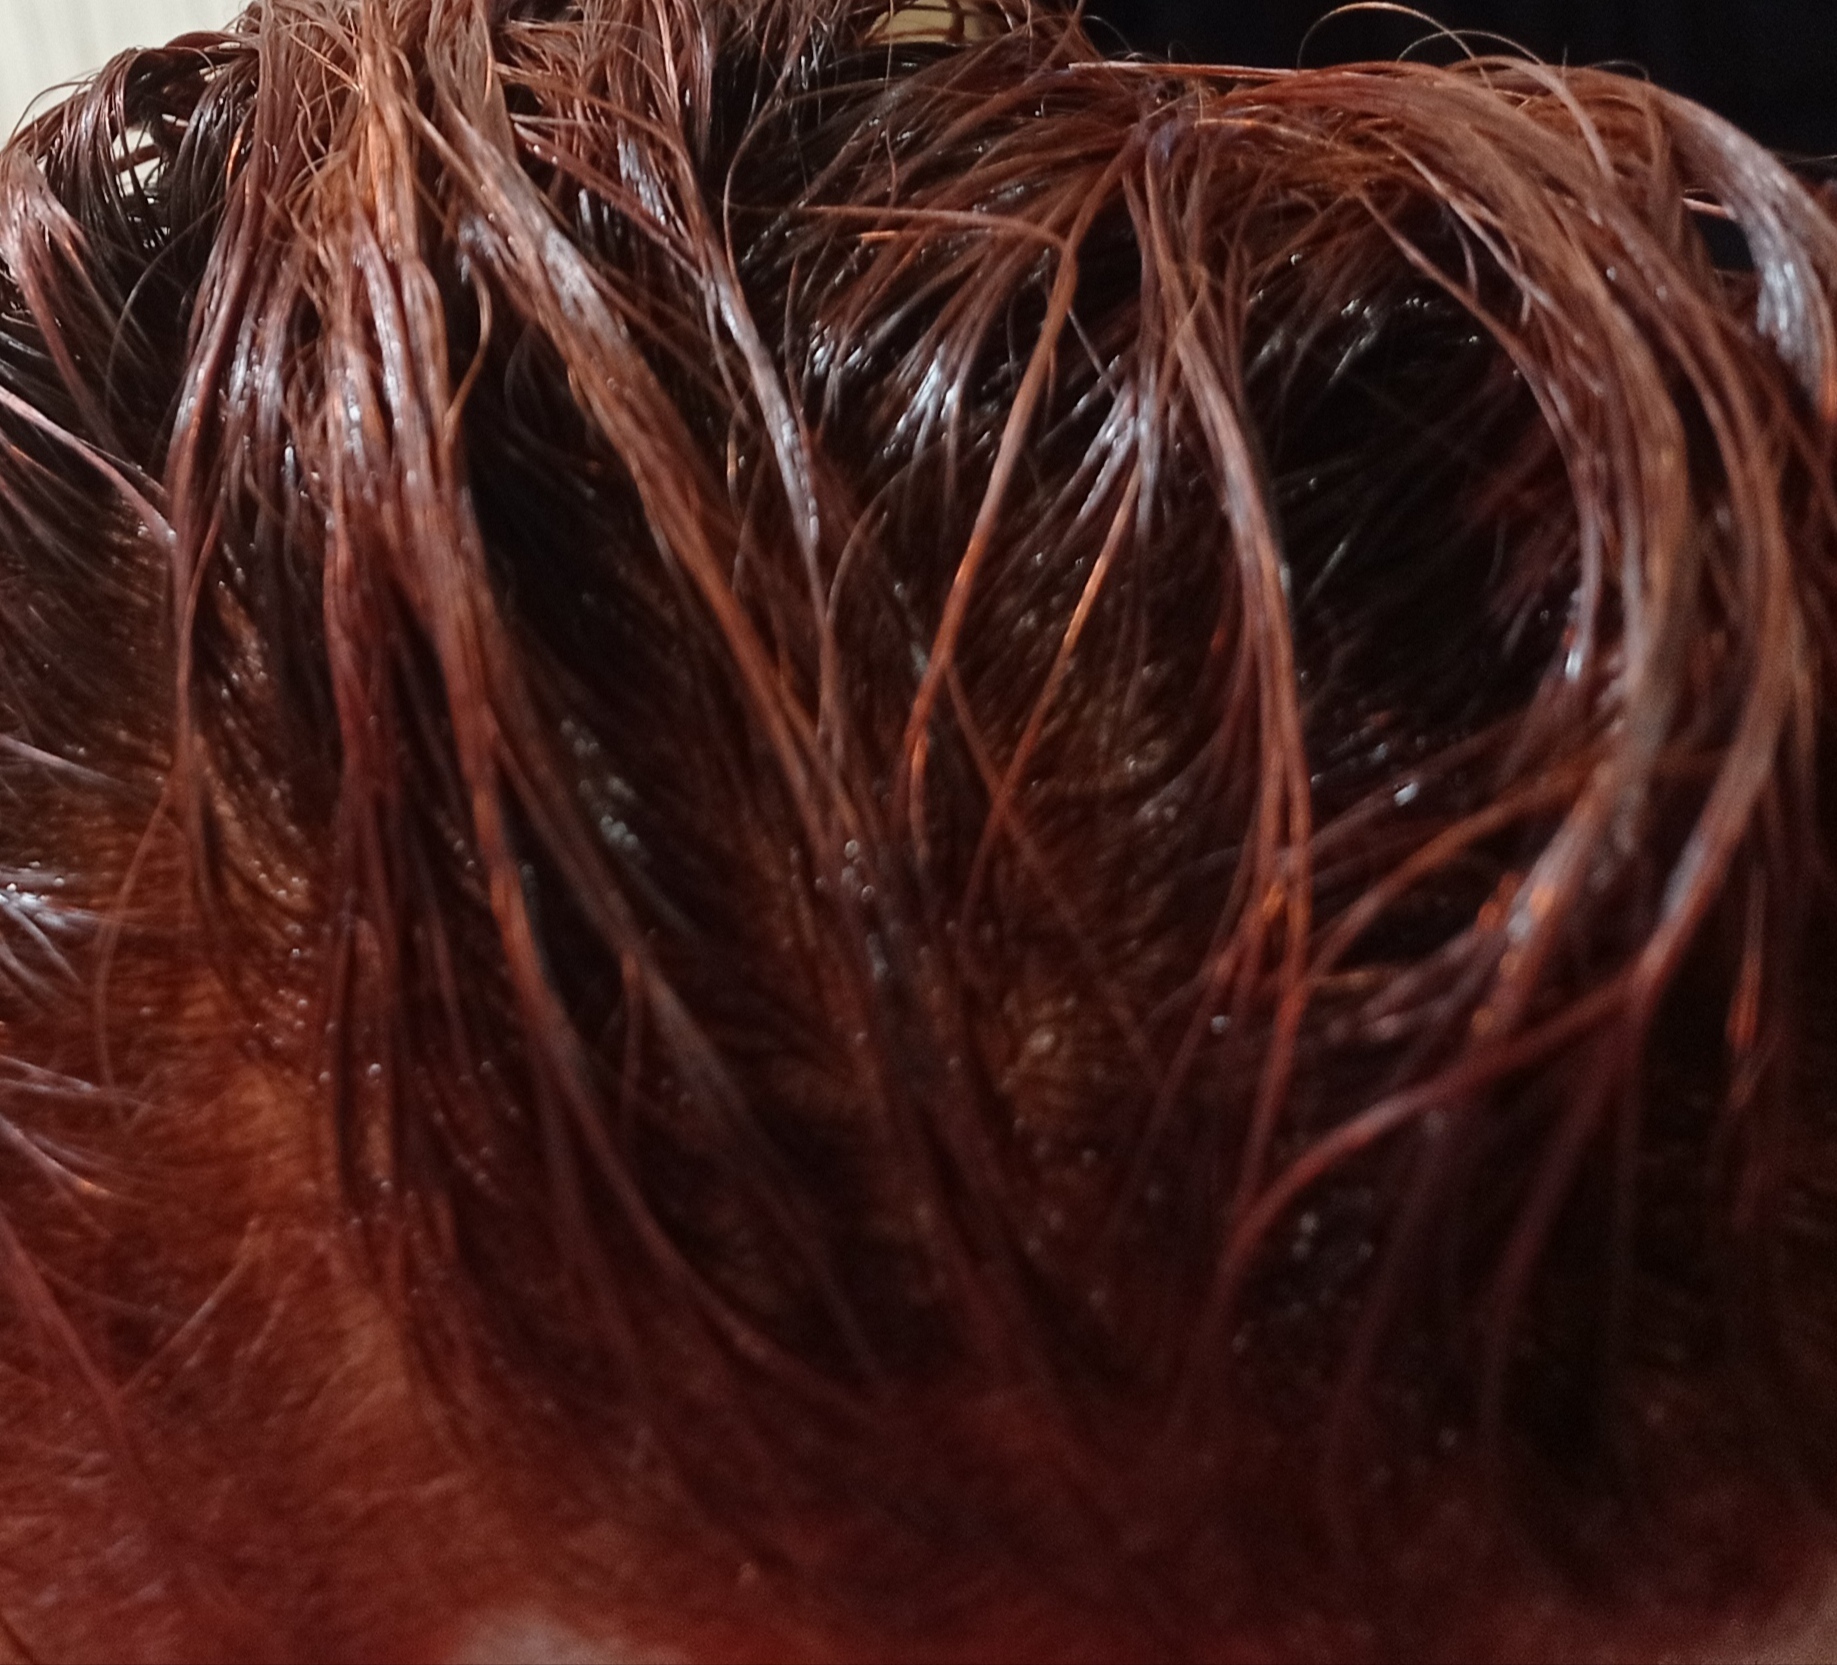 Фотография покупателя товара Краска для волос кератиновая Only Bio Color медно-рыжий, 50 мл